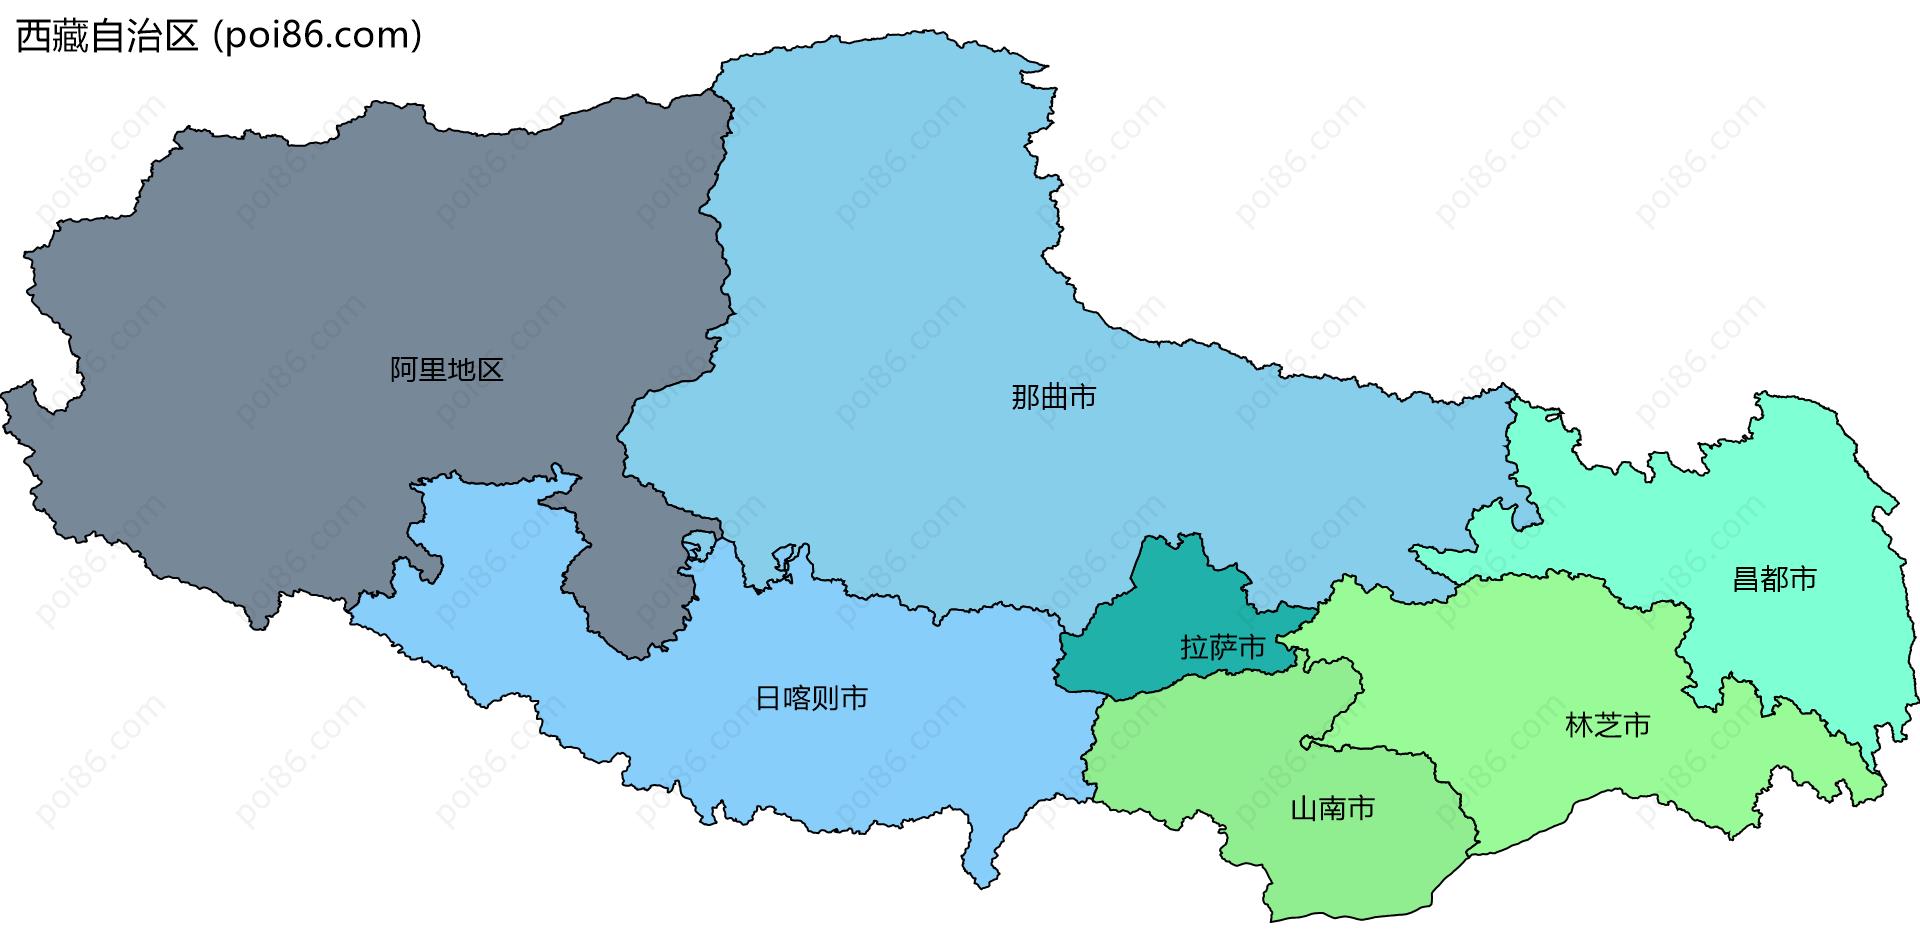 西藏自治区边界地图